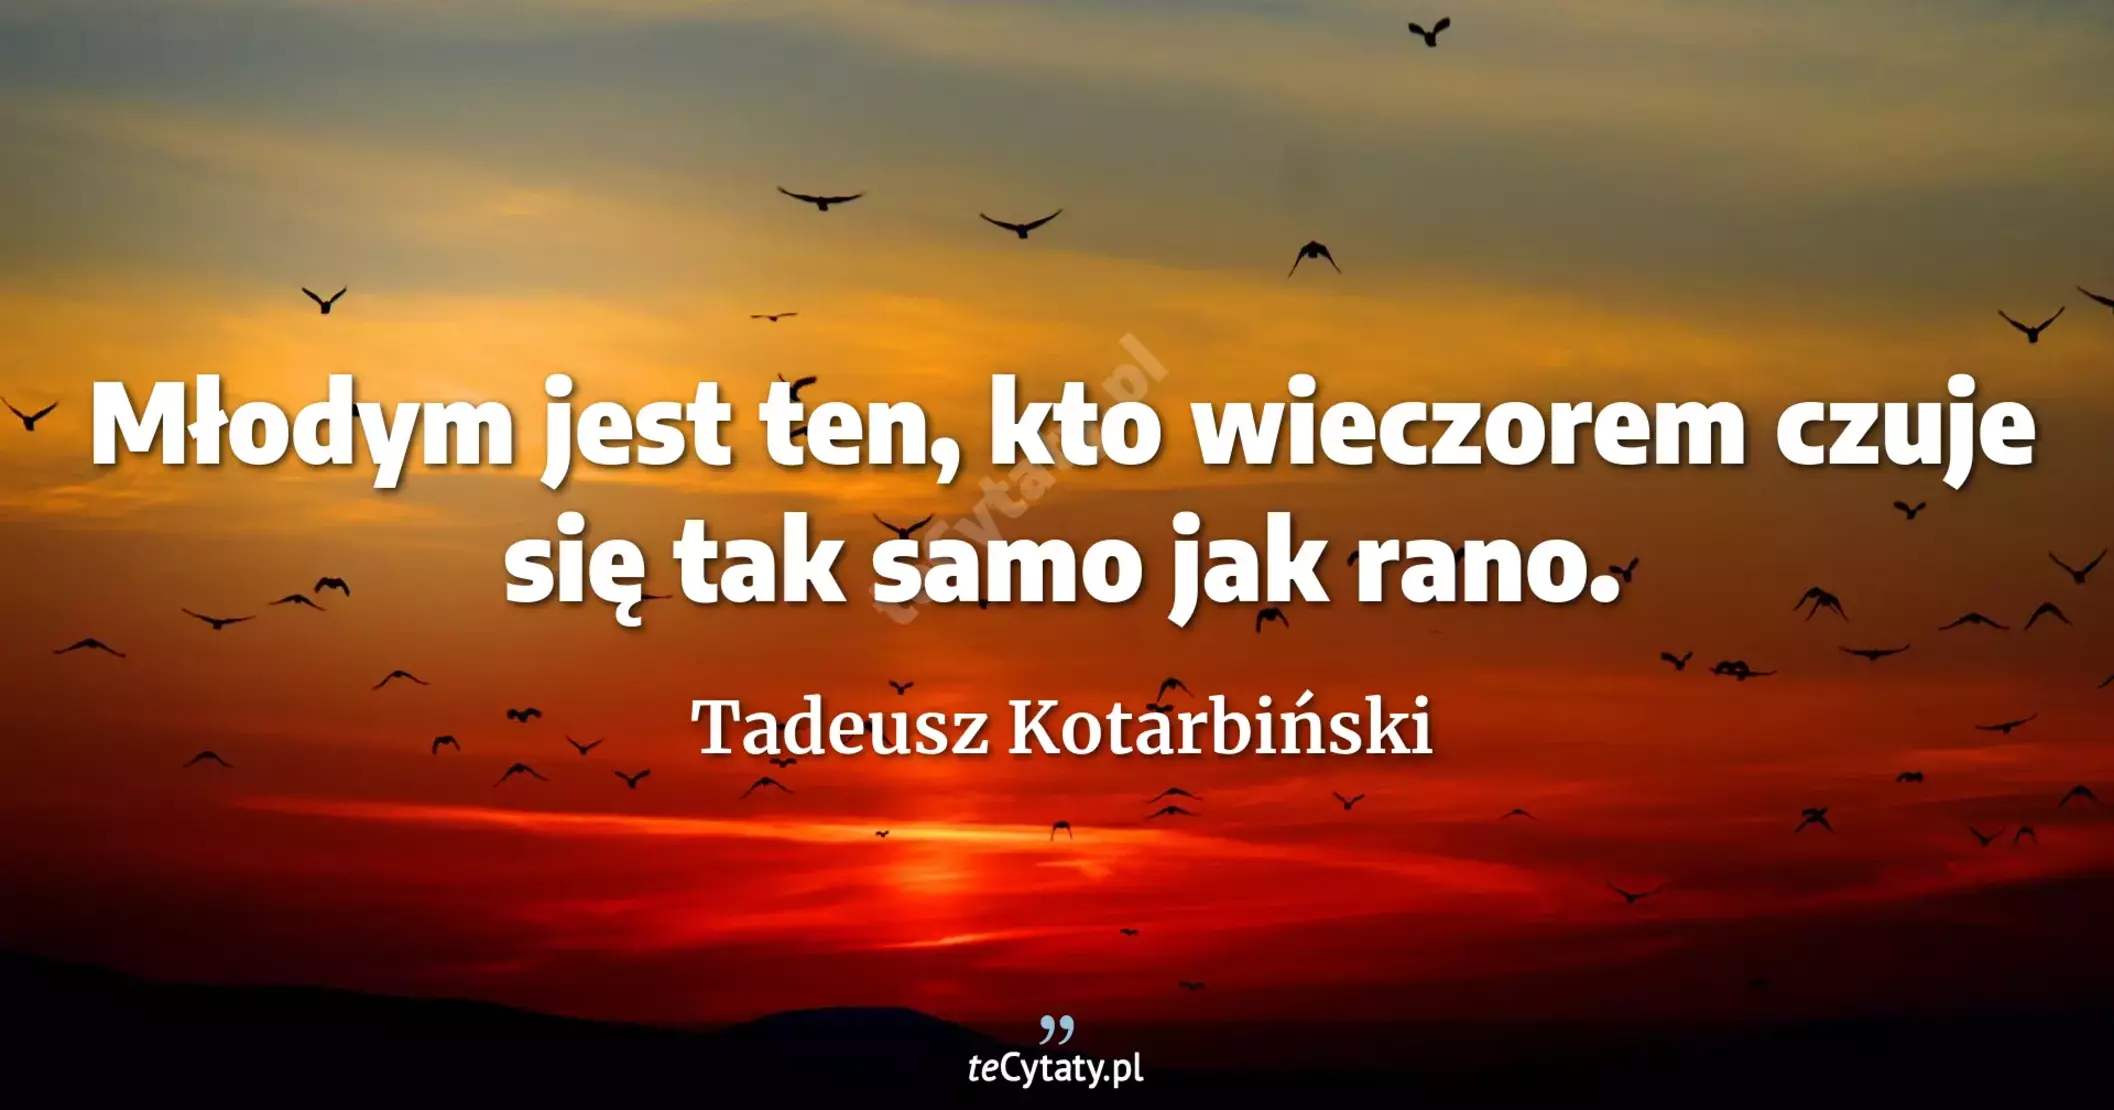 Młodym jest ten, kto wieczorem czuje się tak samo jak rano. - Tadeusz Kotarbiński